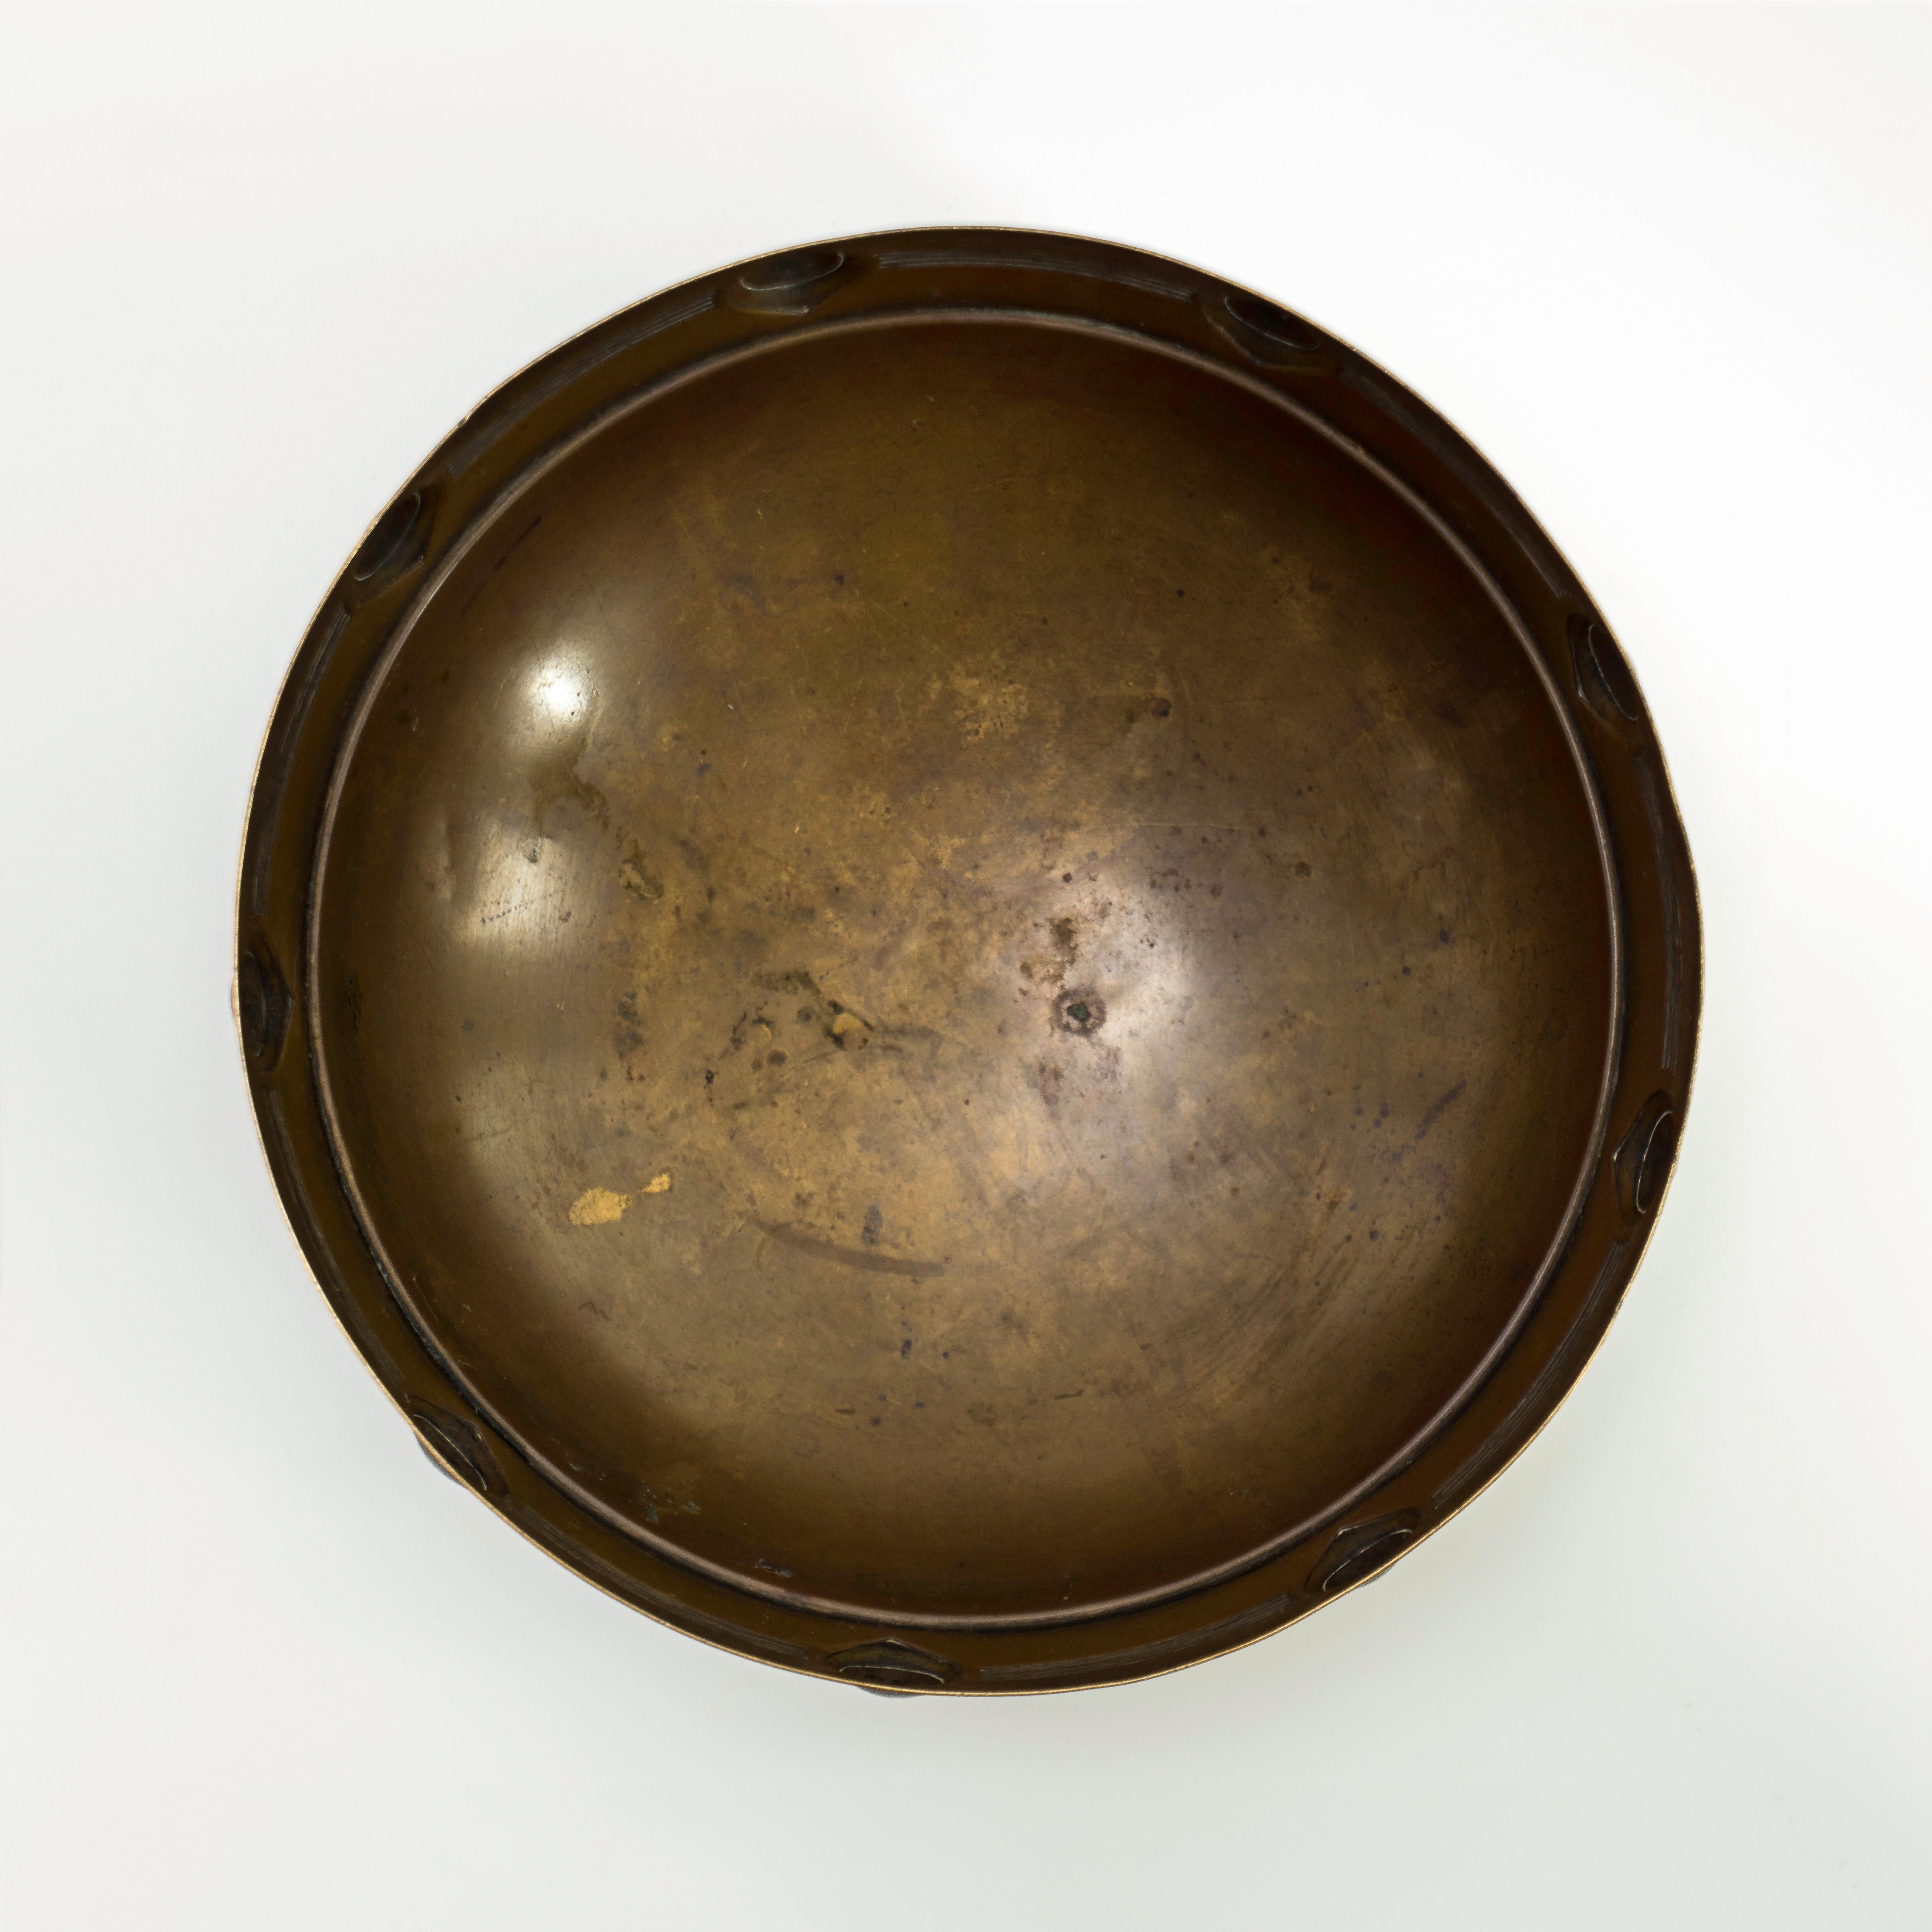 Molded Jugendstil Brass Bowl Designed by Albin Mueller for WMF